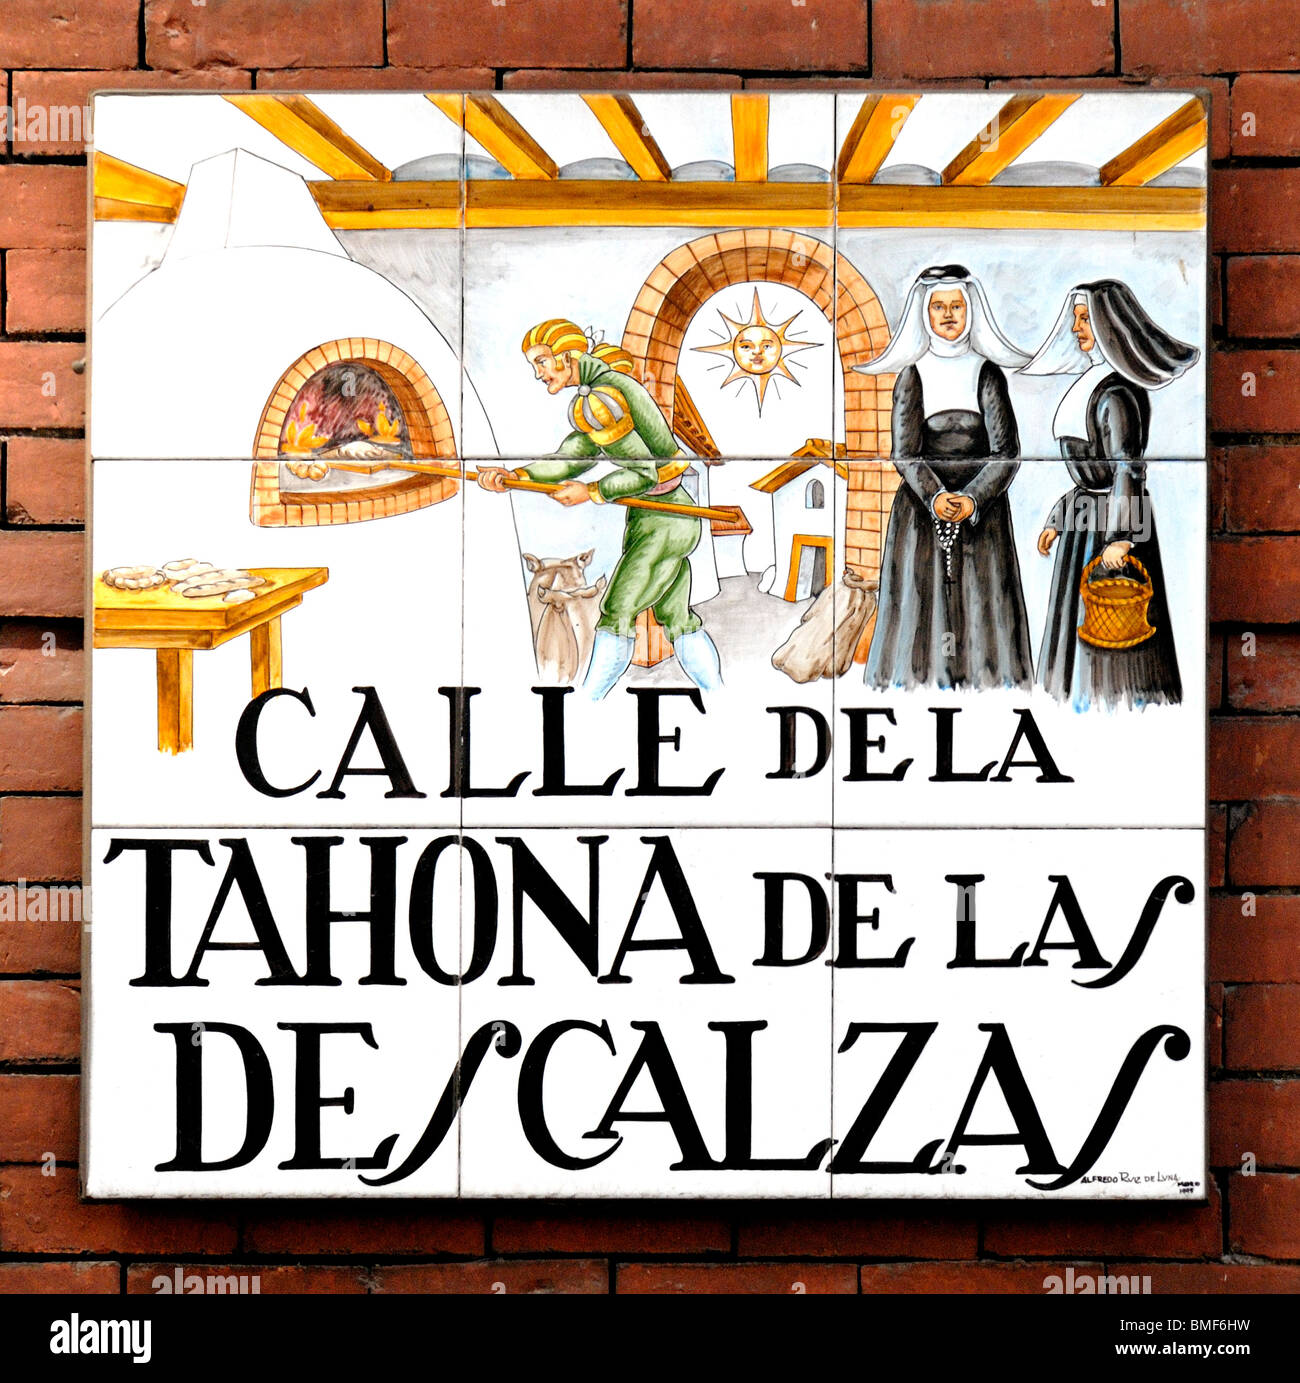 Madrid, Spain. Traditional Tiled Street Sign. Calle de la Tahona de la Descalzas (by Alfredo Ruiz de Luna / Madrid) Stock Photo